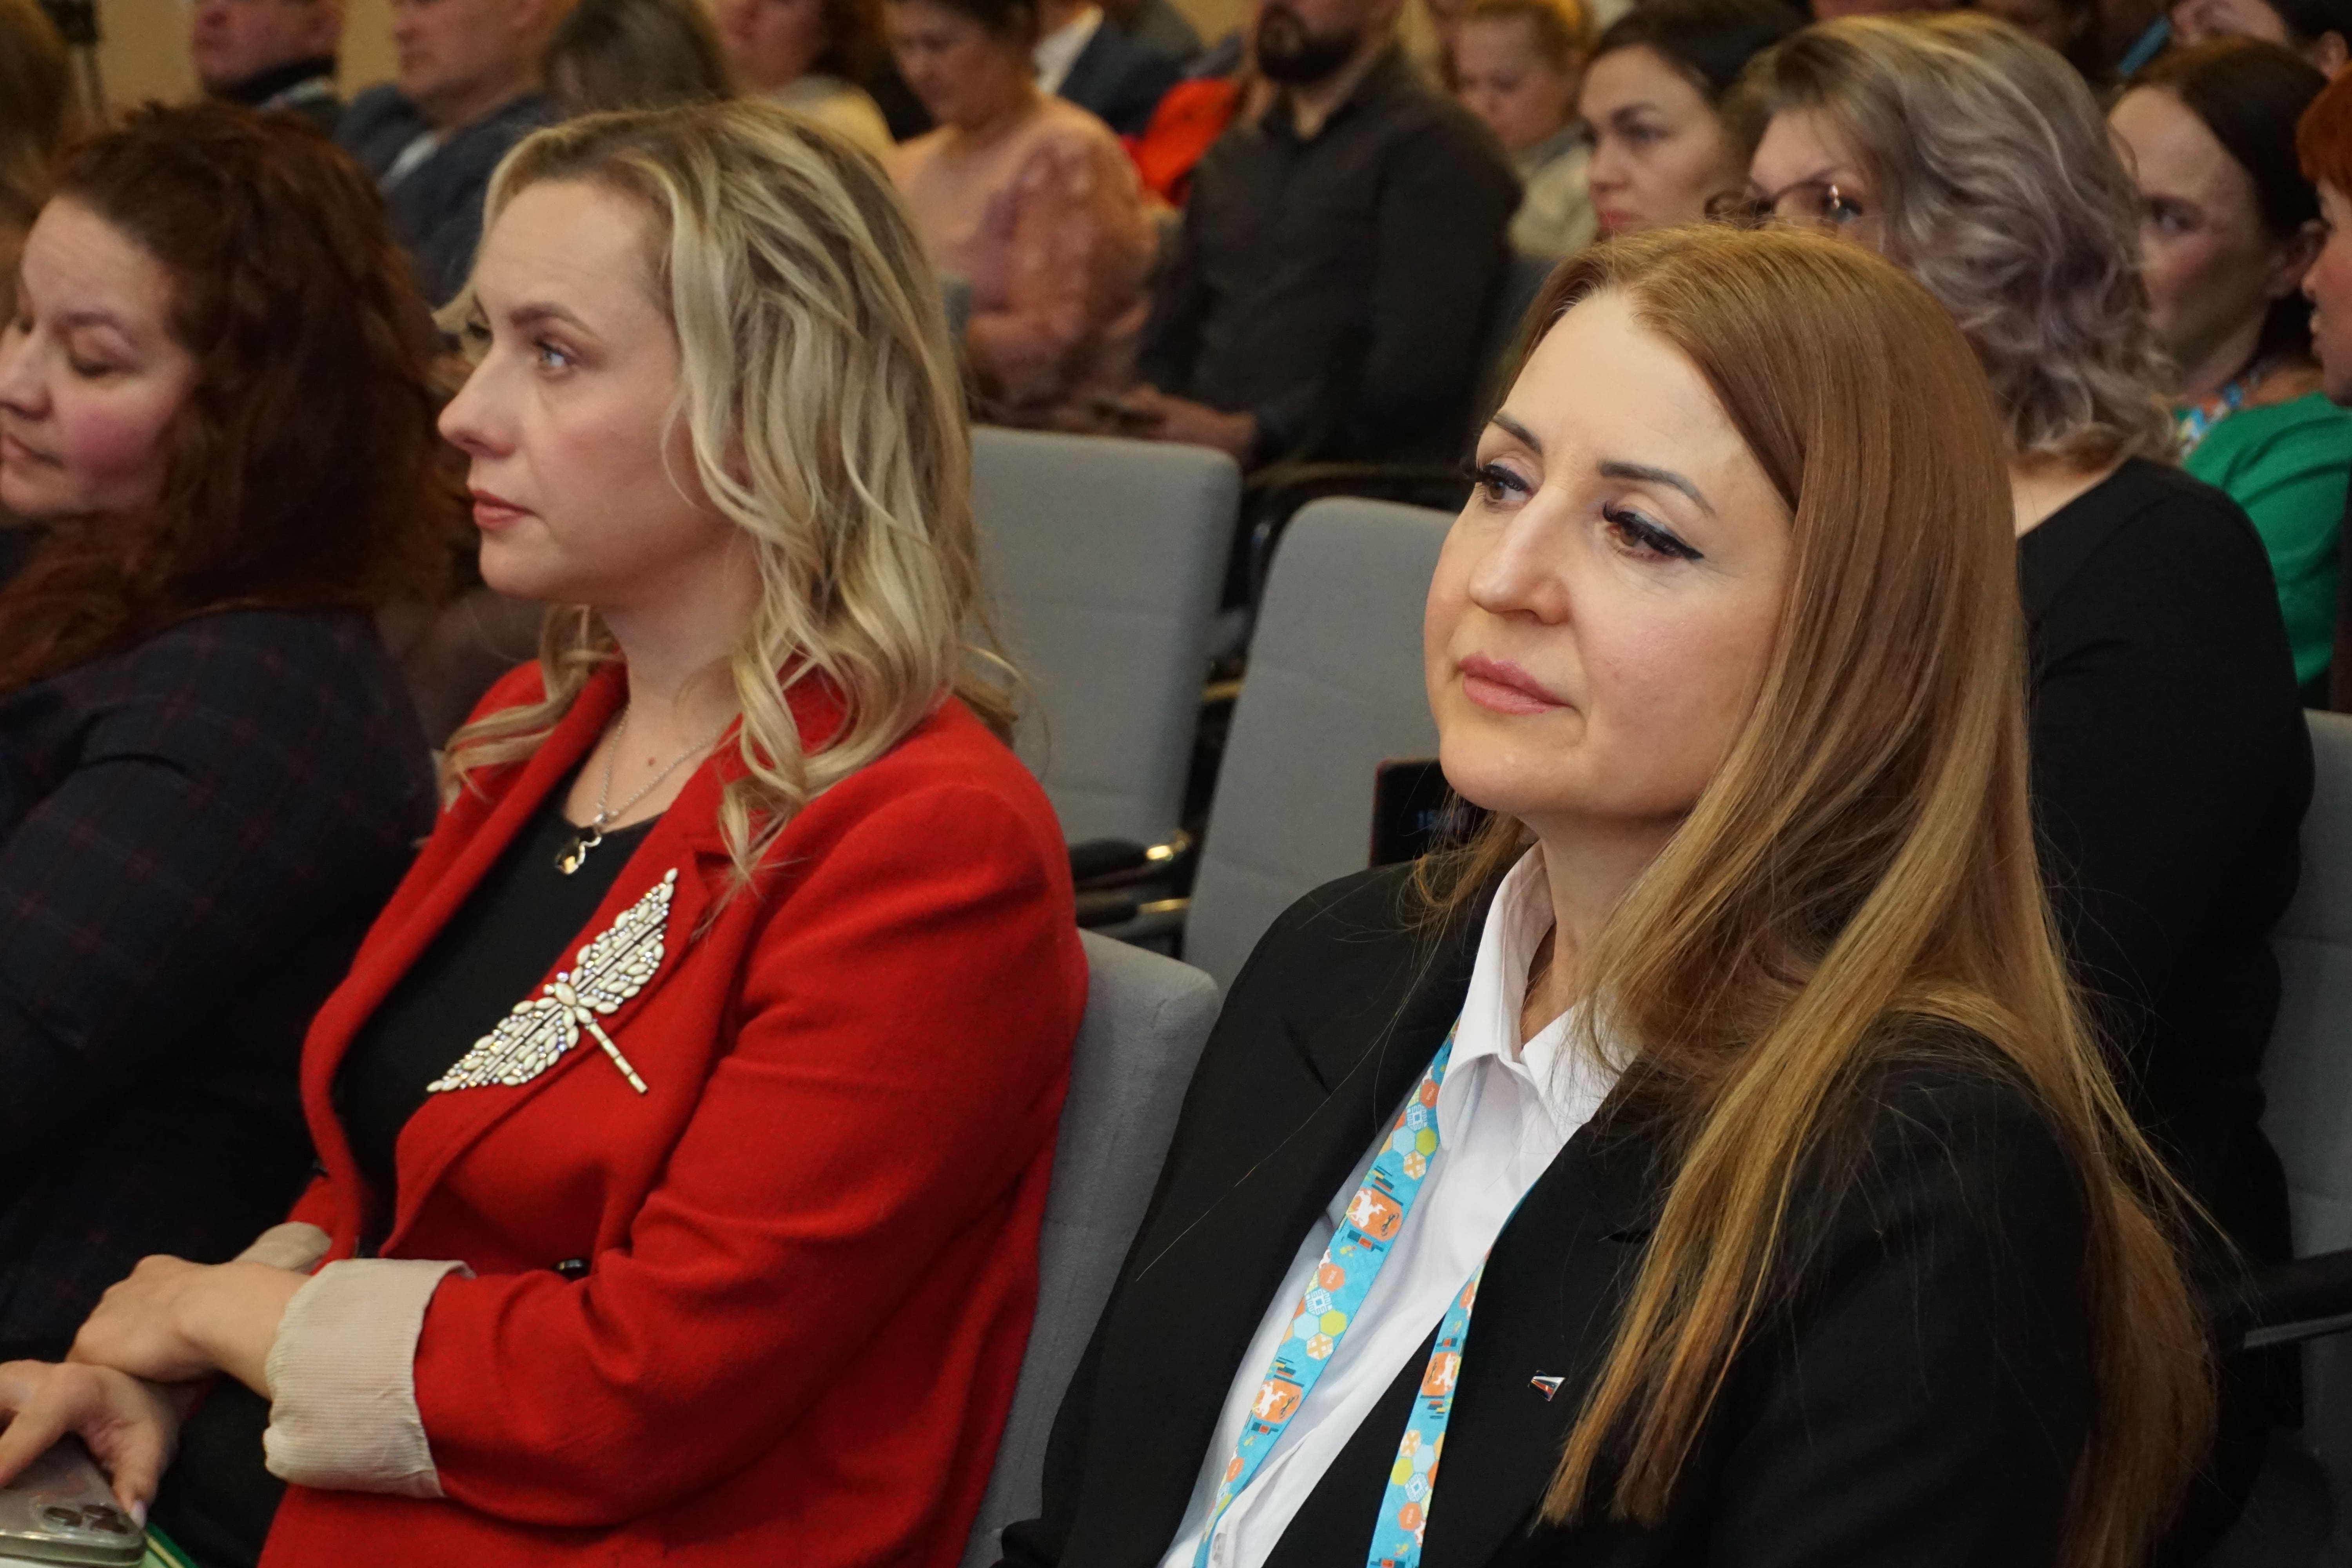 В Башкортостане в рамках форума "Сильные идеи для страны" презентовали 7 проектов в сфере предпринимательства -slide